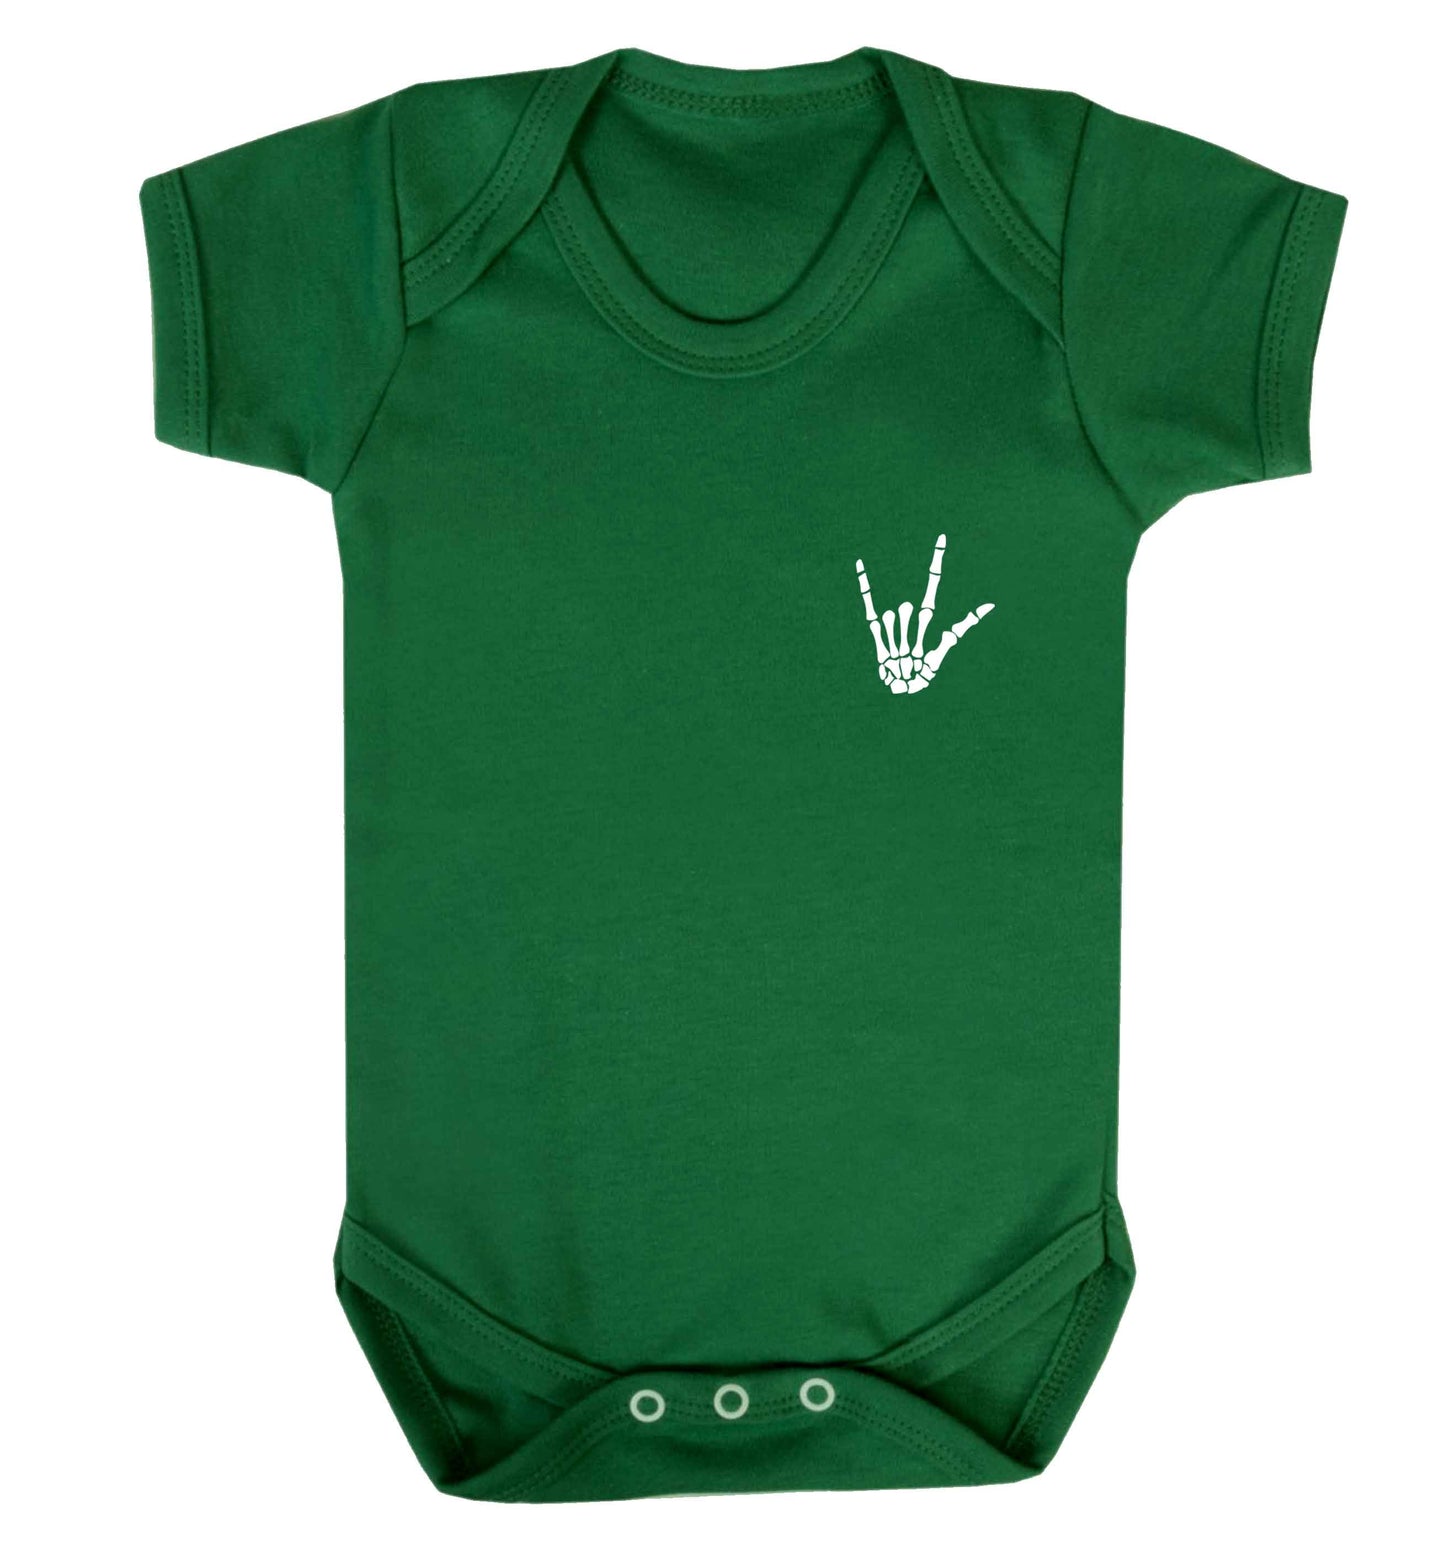 Skeleton Hand Pocket baby vest green 18-24 months